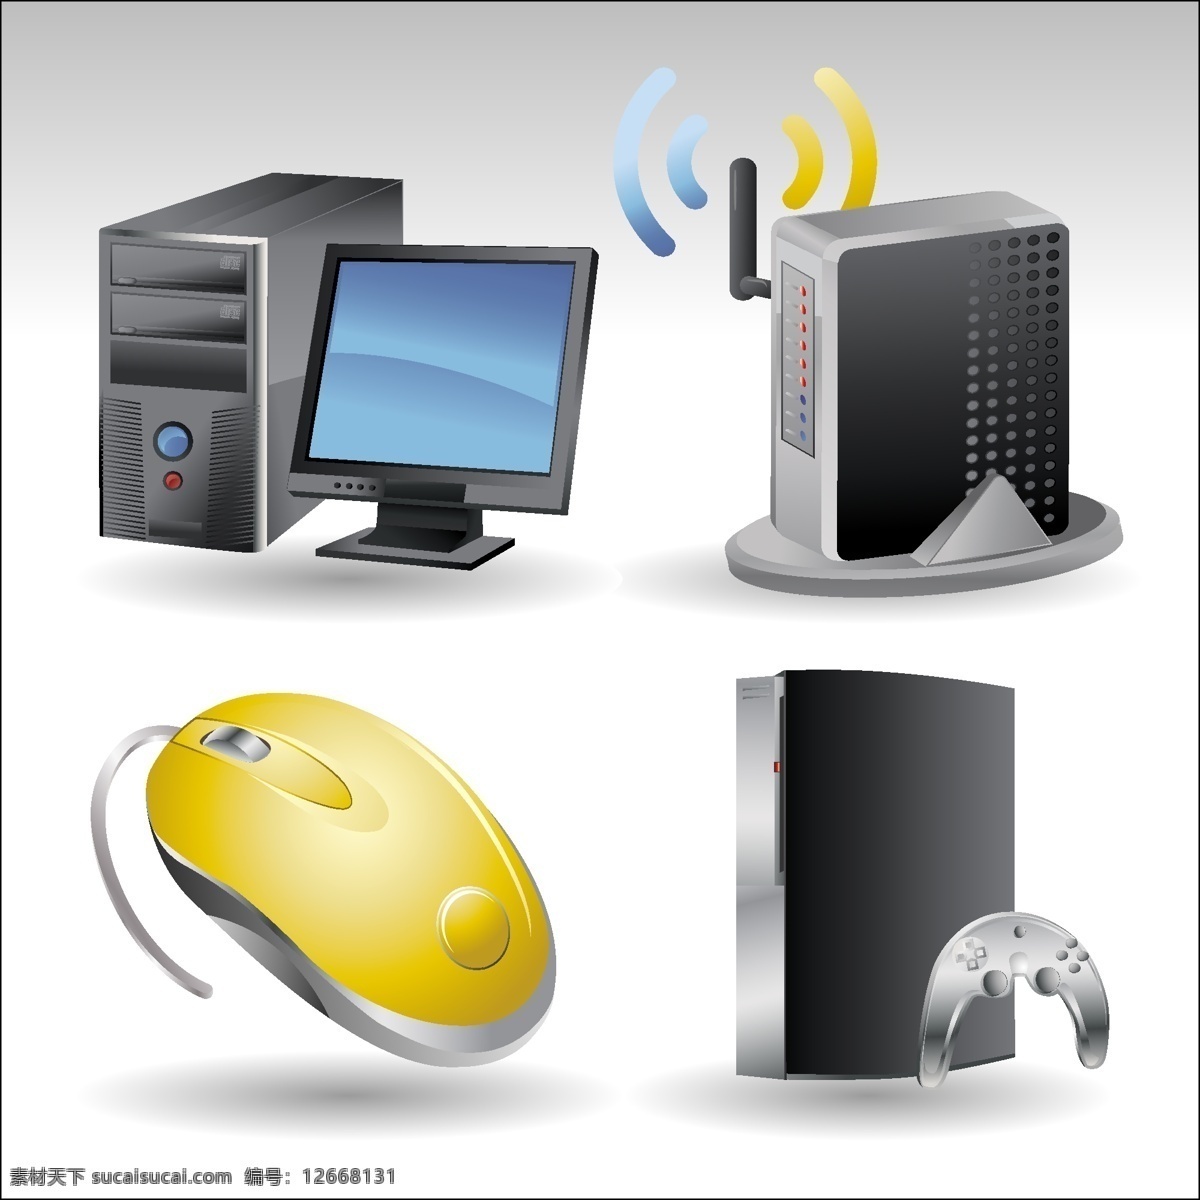 电脑鼠标合集 icon 电脑 鼠标 显示器 游戏机 主机 icon合集 信号片 矢量图 其他矢量图